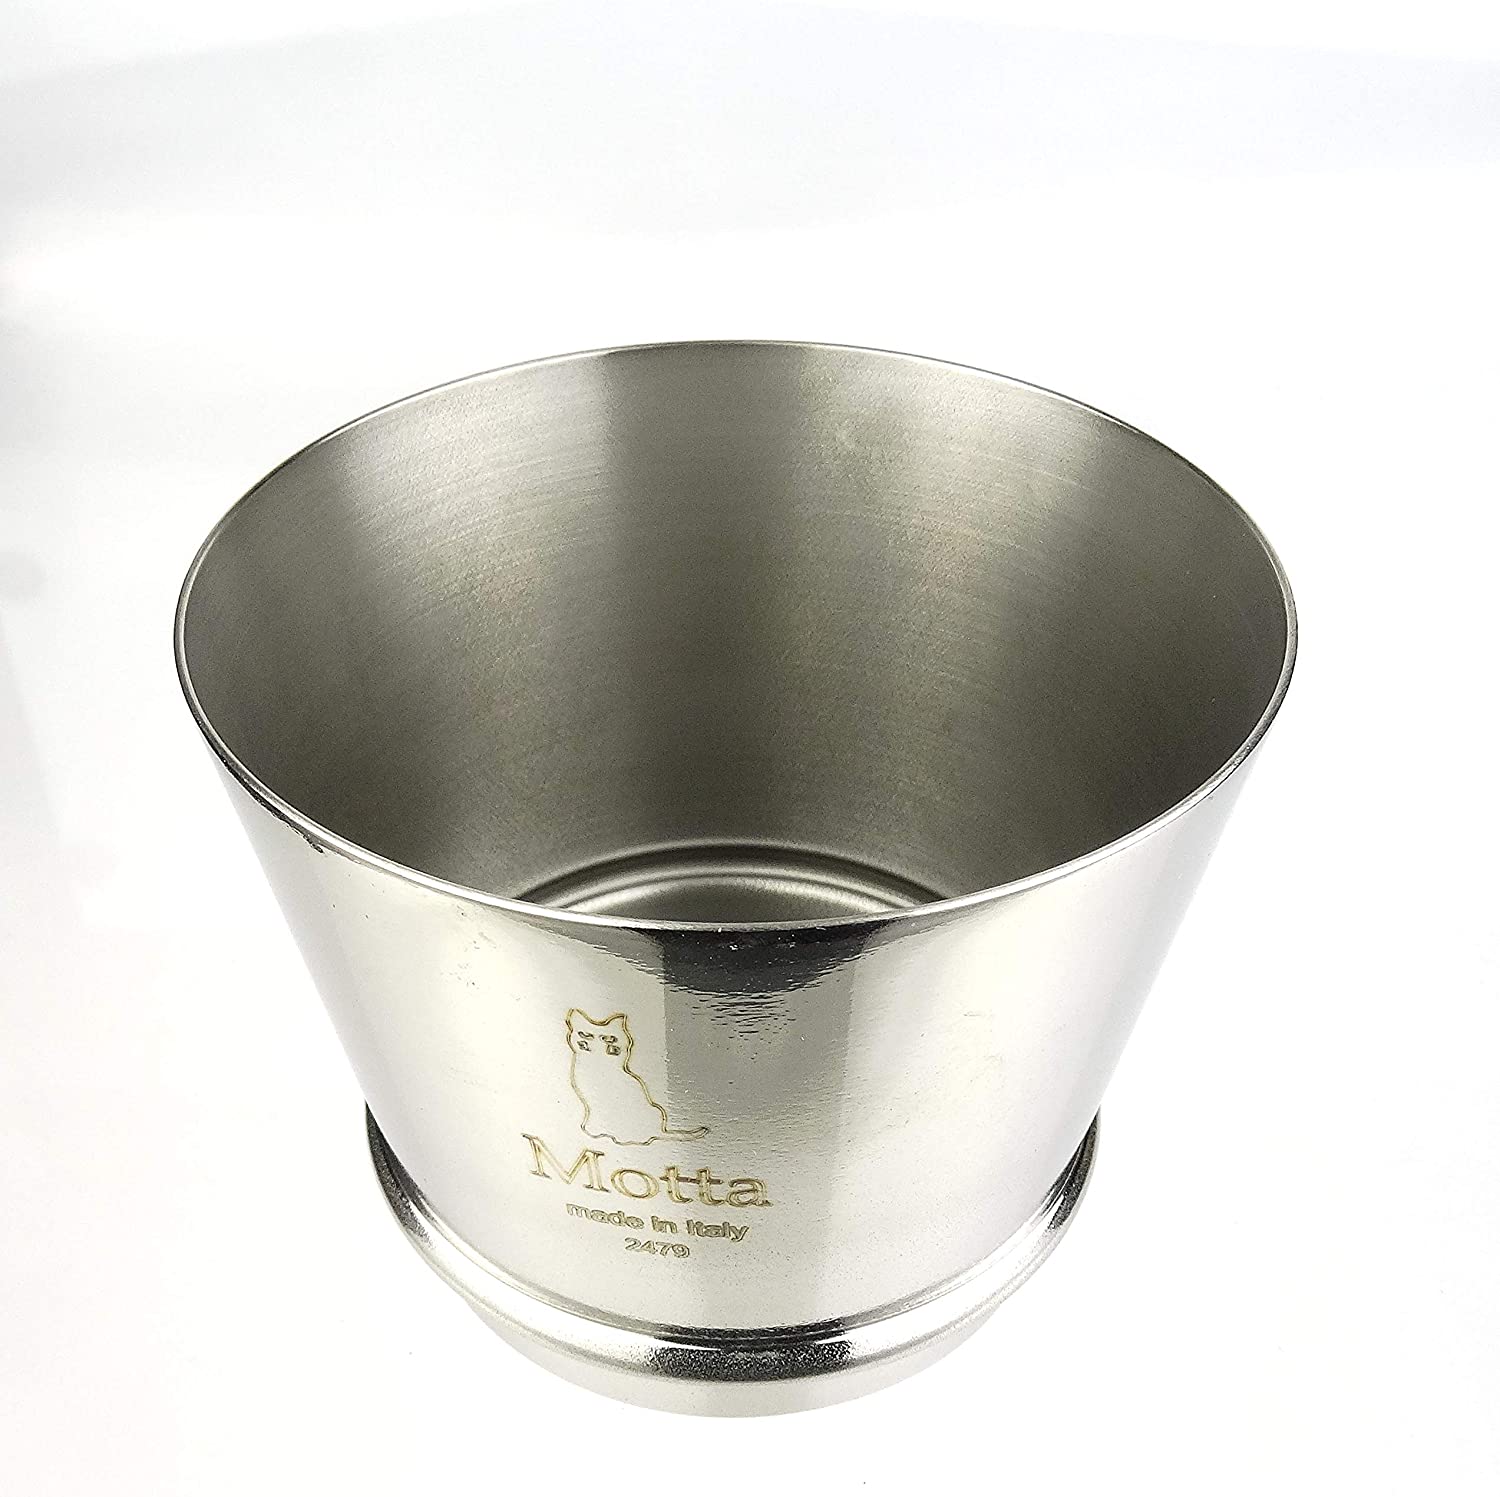 Motta | Trichter für Ihre Espressomaschine | Höhe 60 mm | Edelstahl | Imbuto per Macinacaffé | Made in Italy (60)